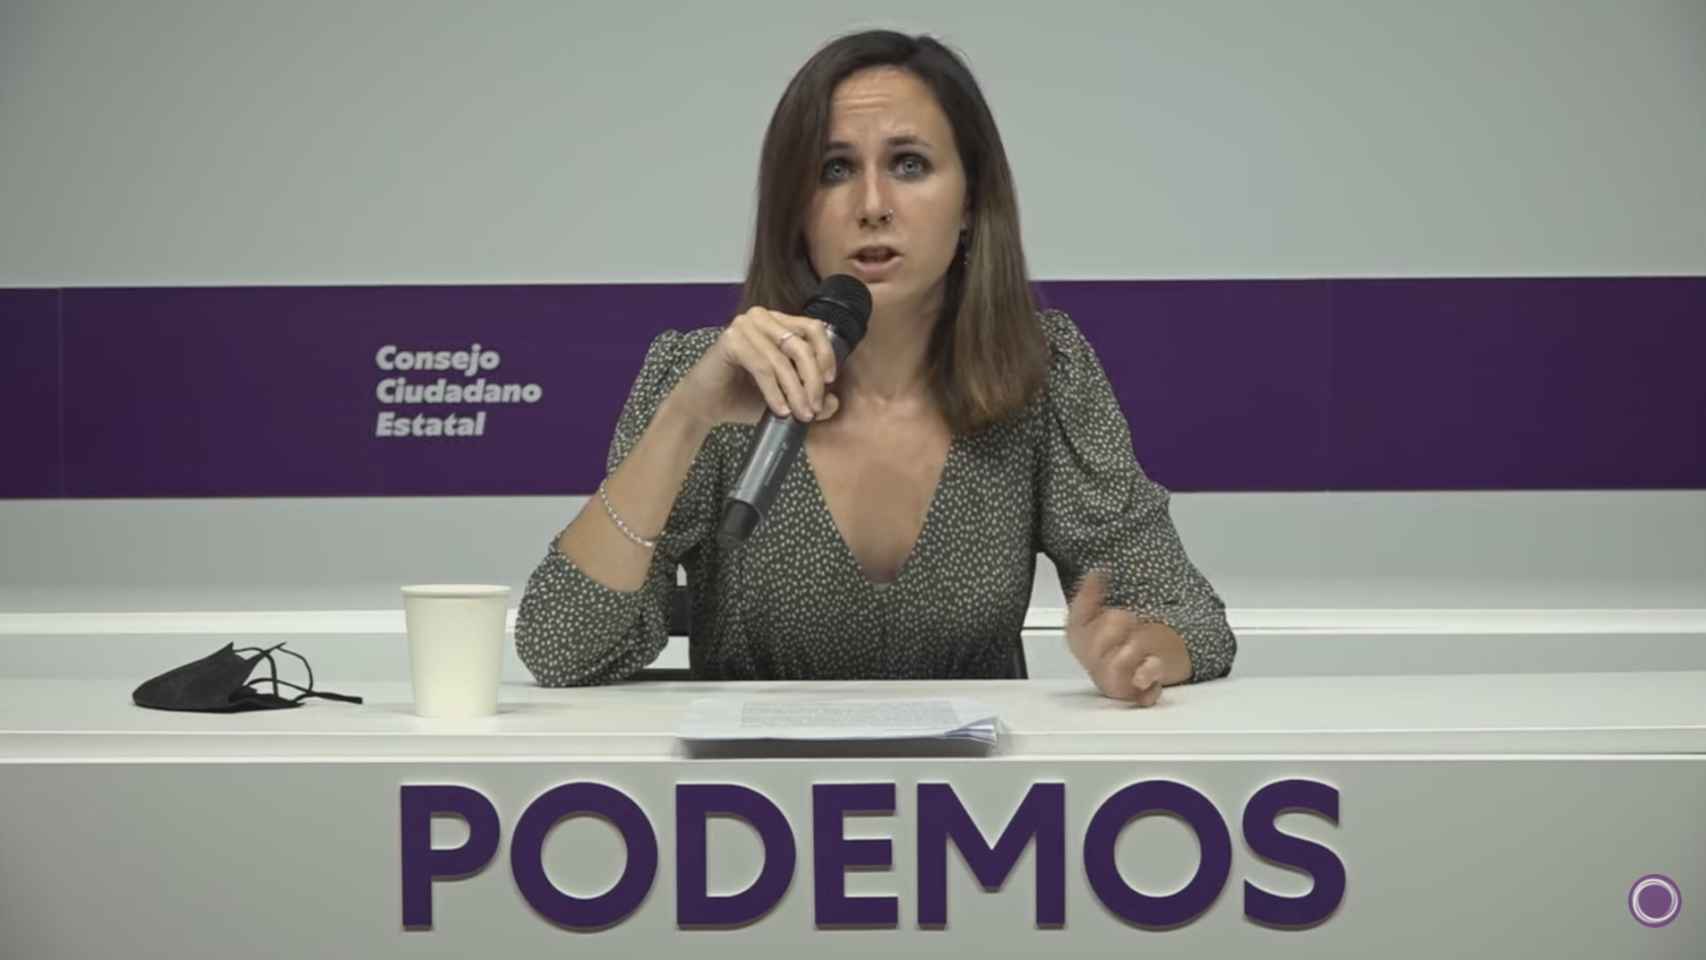 Ione Belarra, secretaria general, en su discurso ante el Consejo Ciudadano de Podemos.